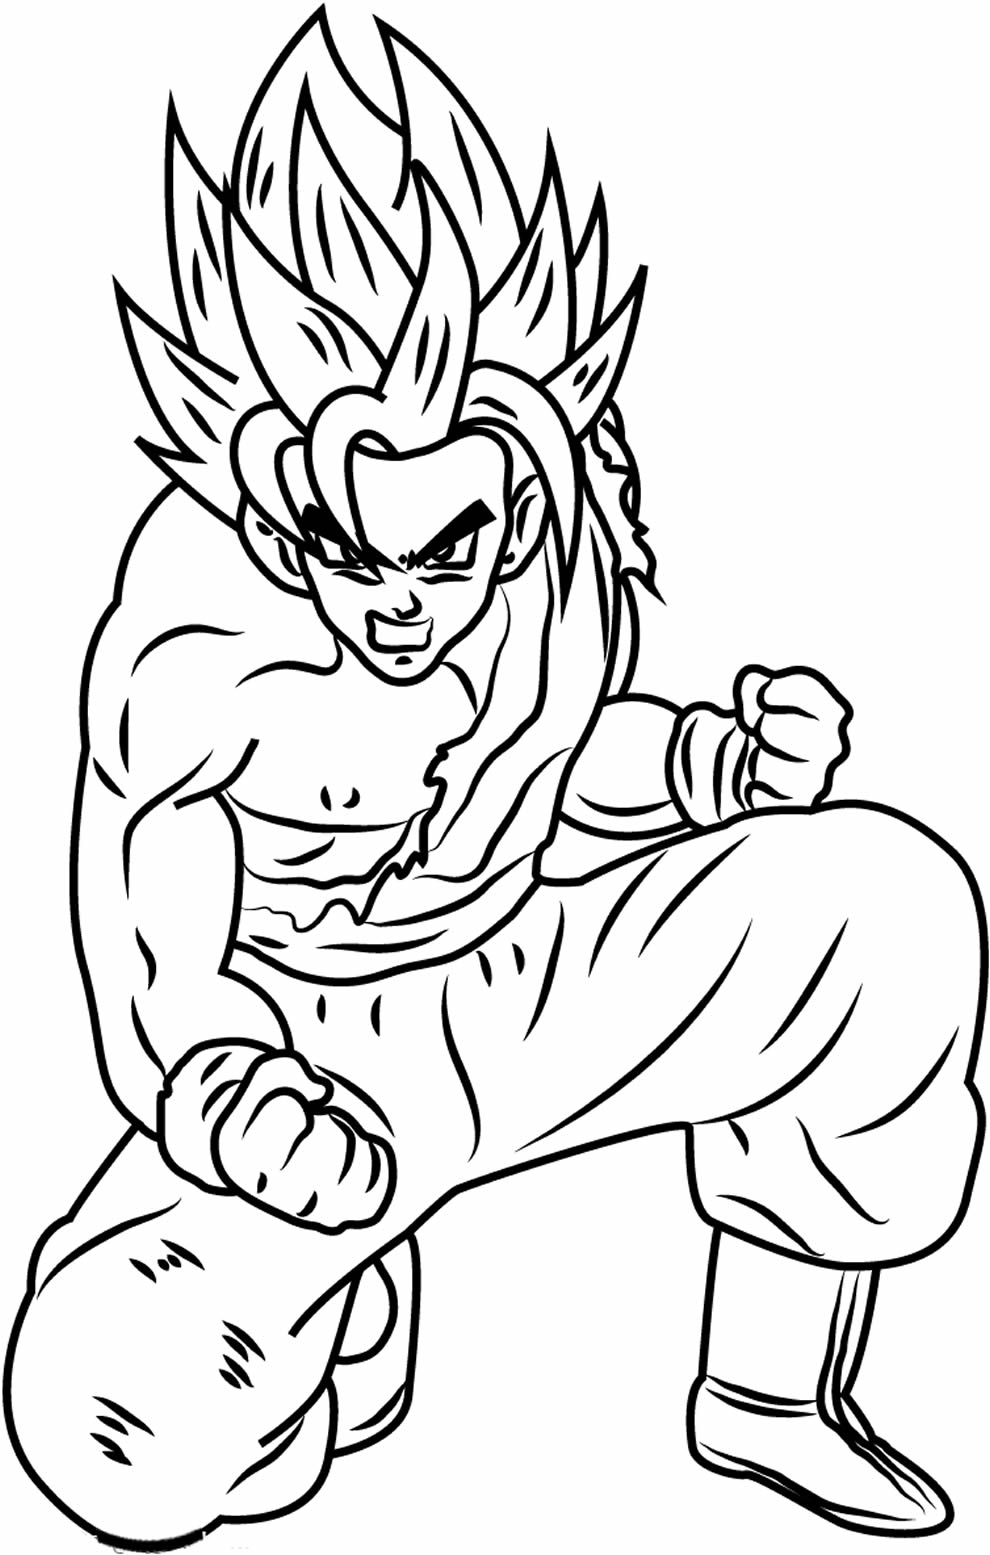 Imagem para pintar de Goku